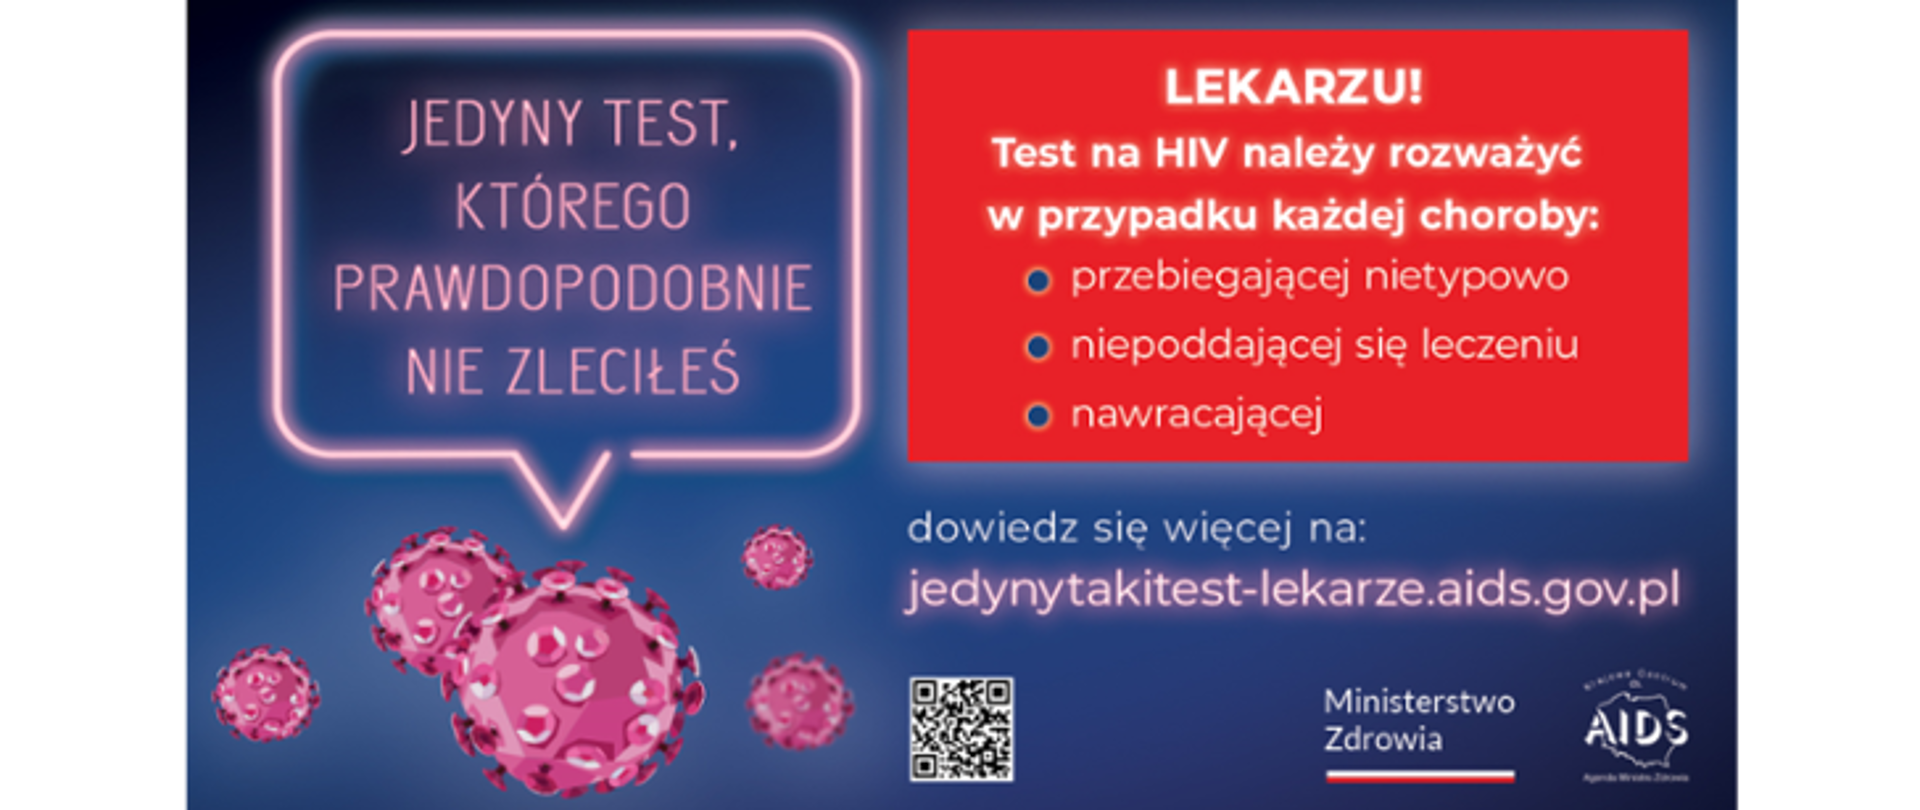 Grafika z tekstem: Jedyny test, którego prawdopodobnie nie zleciłeś. Lekarzu! Test na HIV należy rozważyć w przypadku każdej choroby: przebiegającej nietypowo, niepoddającej się leczeniu, nawracającej. Dowiedz się więcej na: jedynytakitest-lekarze.aids.gov.pl. Logo Ministerstwa Zdrowia i Krajowego Centrum ds. AIDS. Grafika z wirusem.